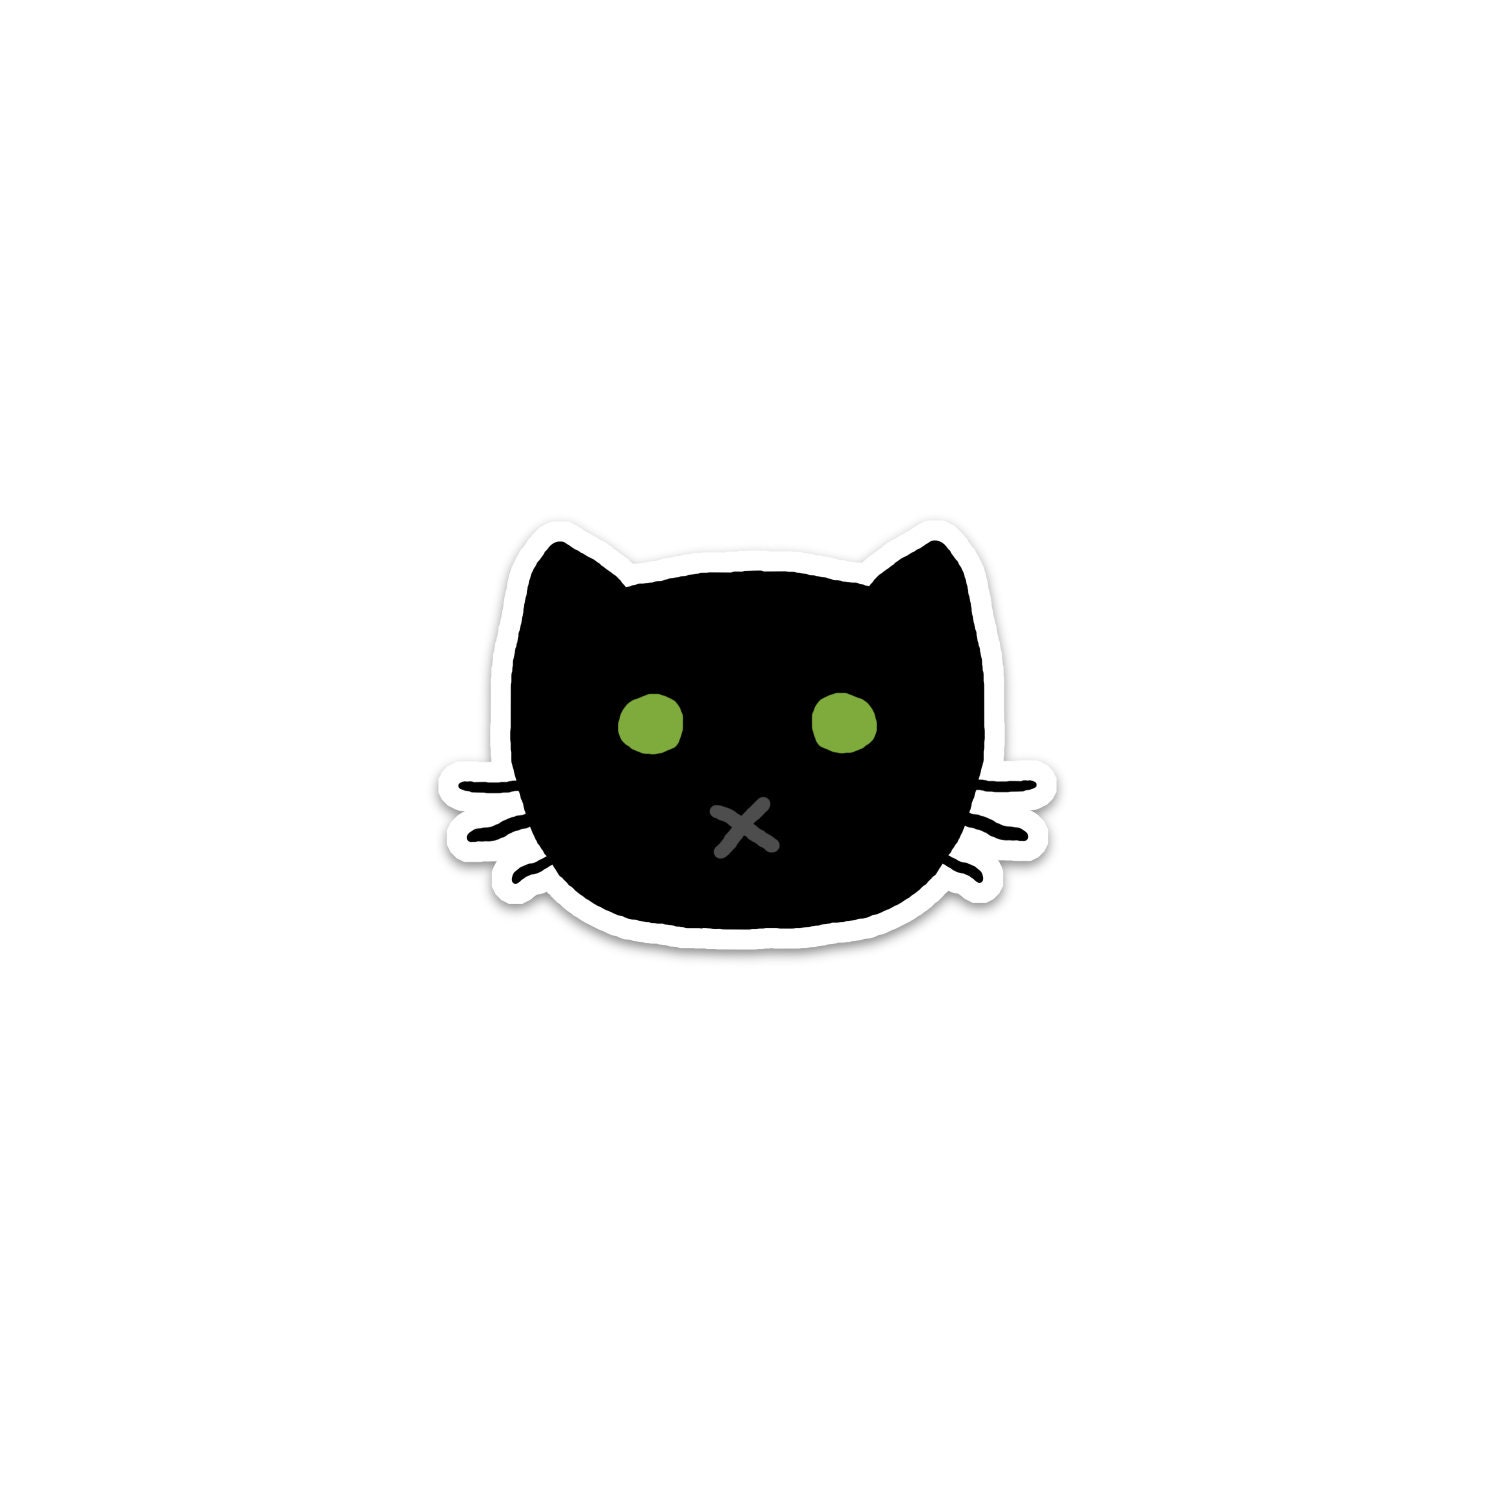 Black Cat Sticker, Phone Sticker, Cat Laptop Sticker, Car Sticker, Bumper  Sticker, Vinyl Sticker, Cute Cat, Green Eyes, Good Luck